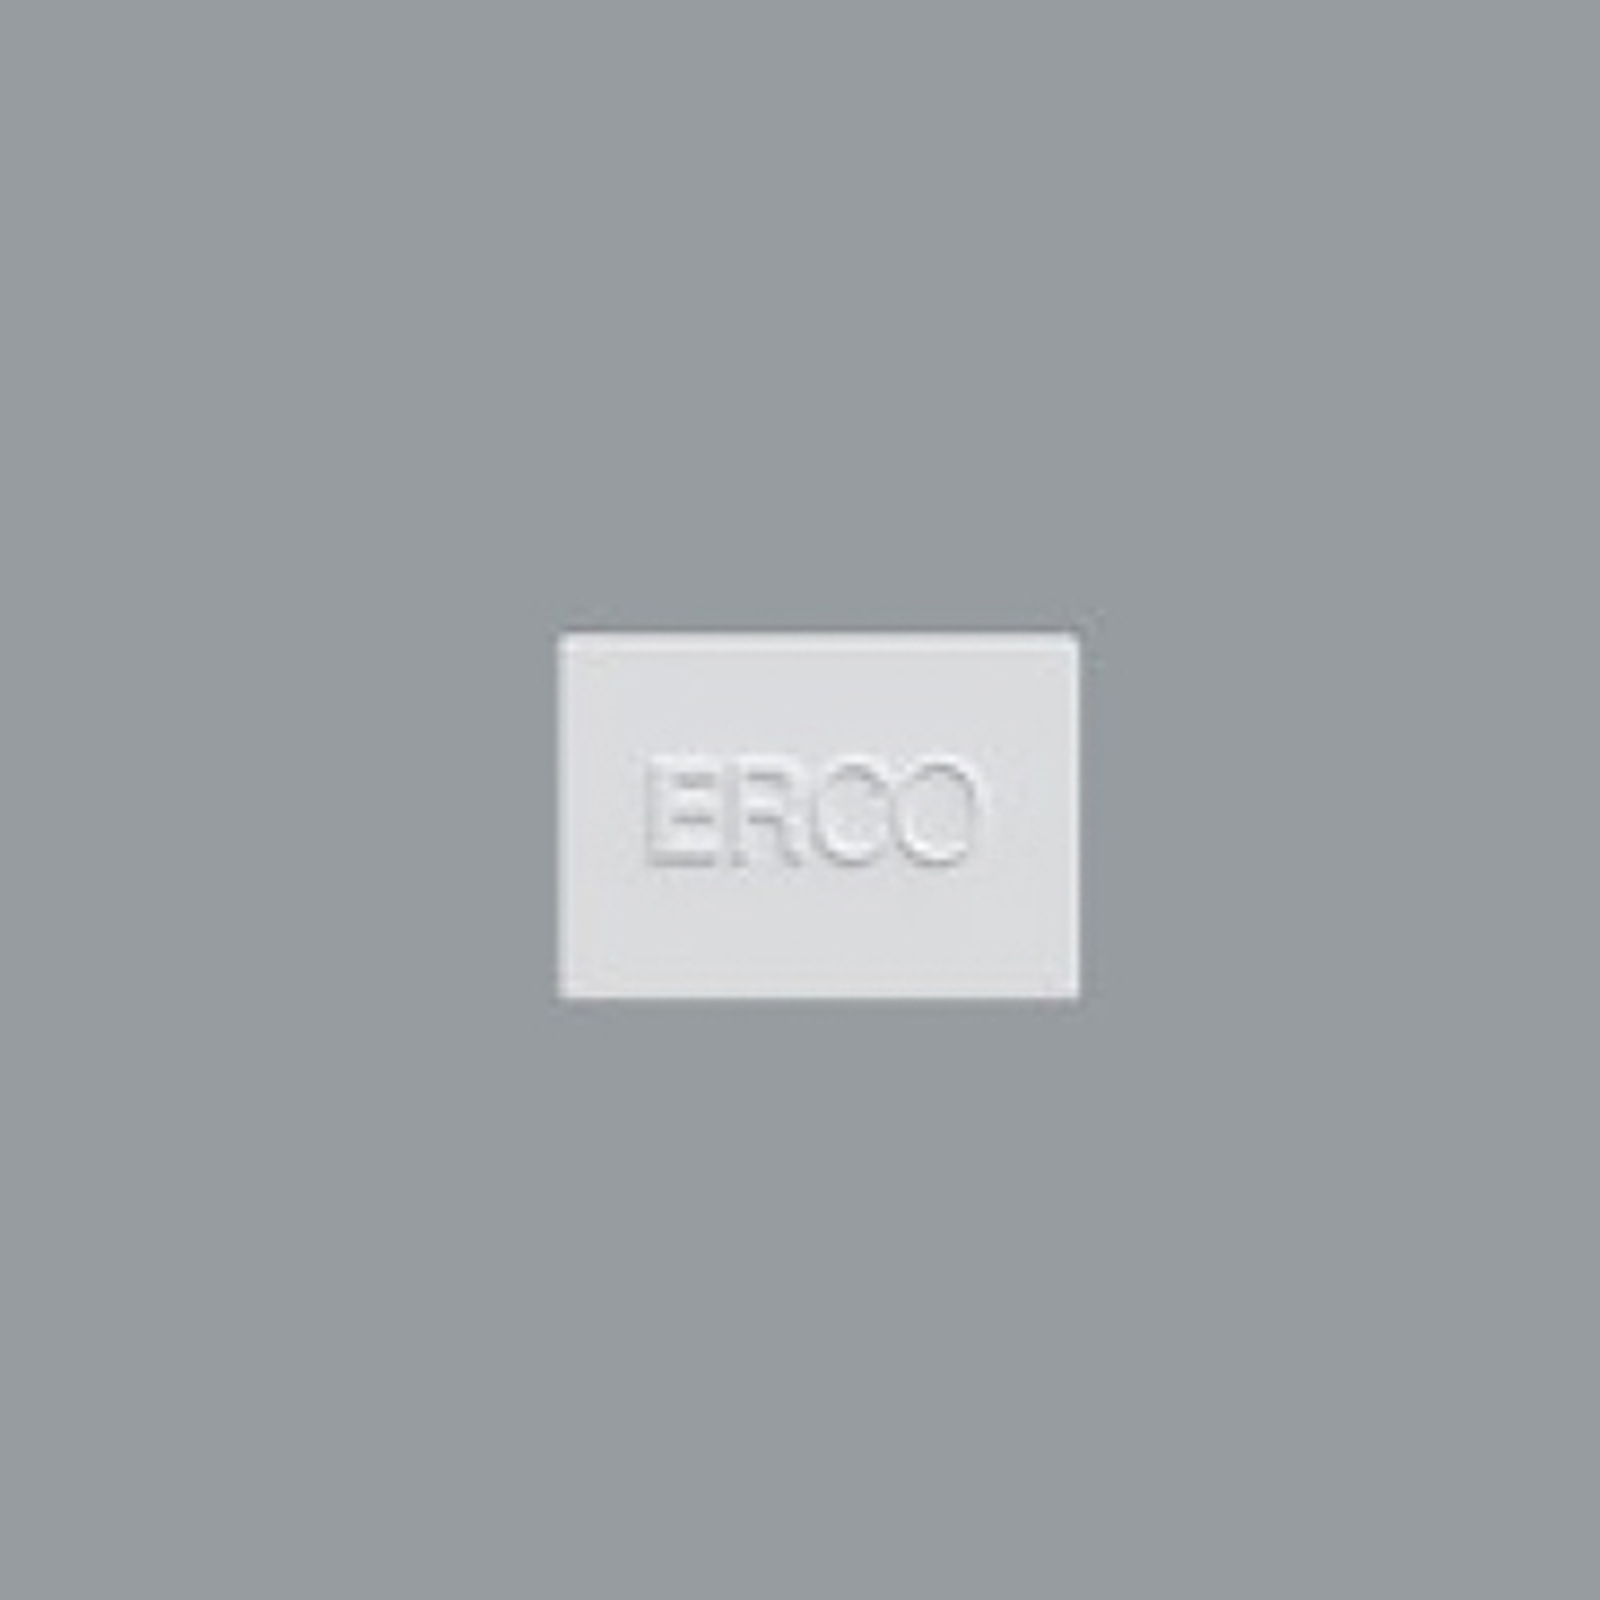 ERCO koncová deska pro kolejnici Minirail, bílá